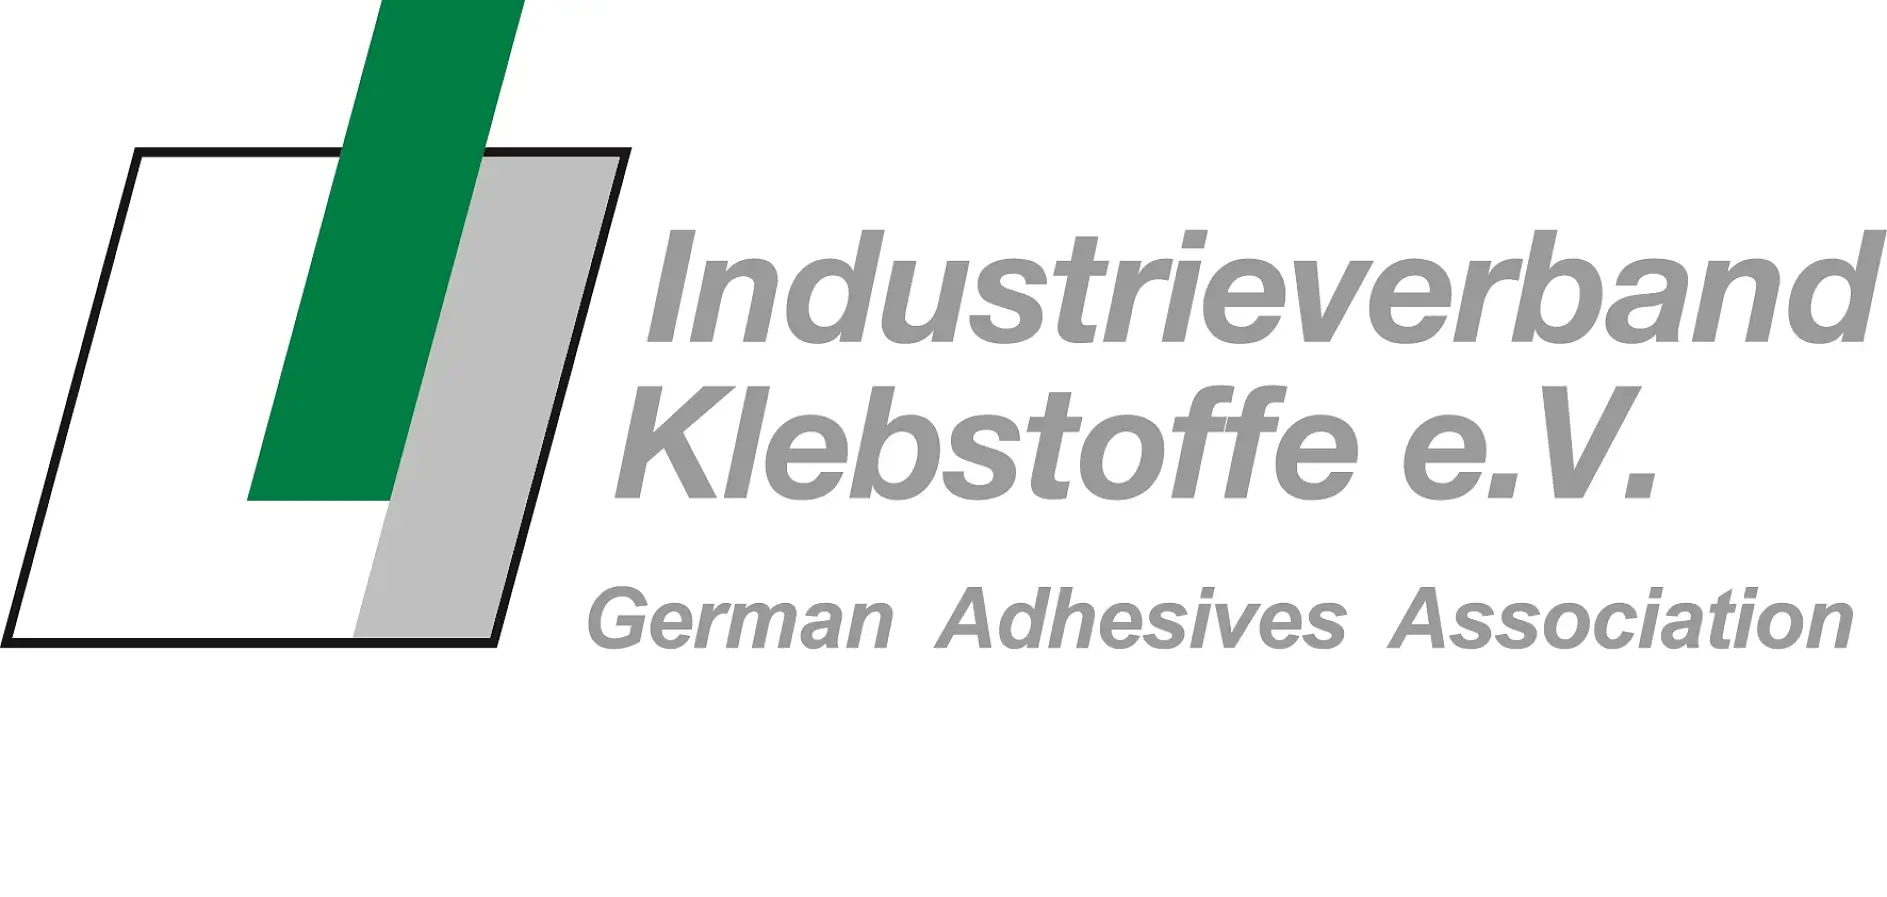 Stowarzyszenie Industrieverband Klebstoffe e.V. (IVK) jest największą na świecie organizacją krajową — a jeśli uwzględnić jej szeroką gamę usług, również czołową organizacją międzynarodową — w obszarze technologii połączeń klejonych.